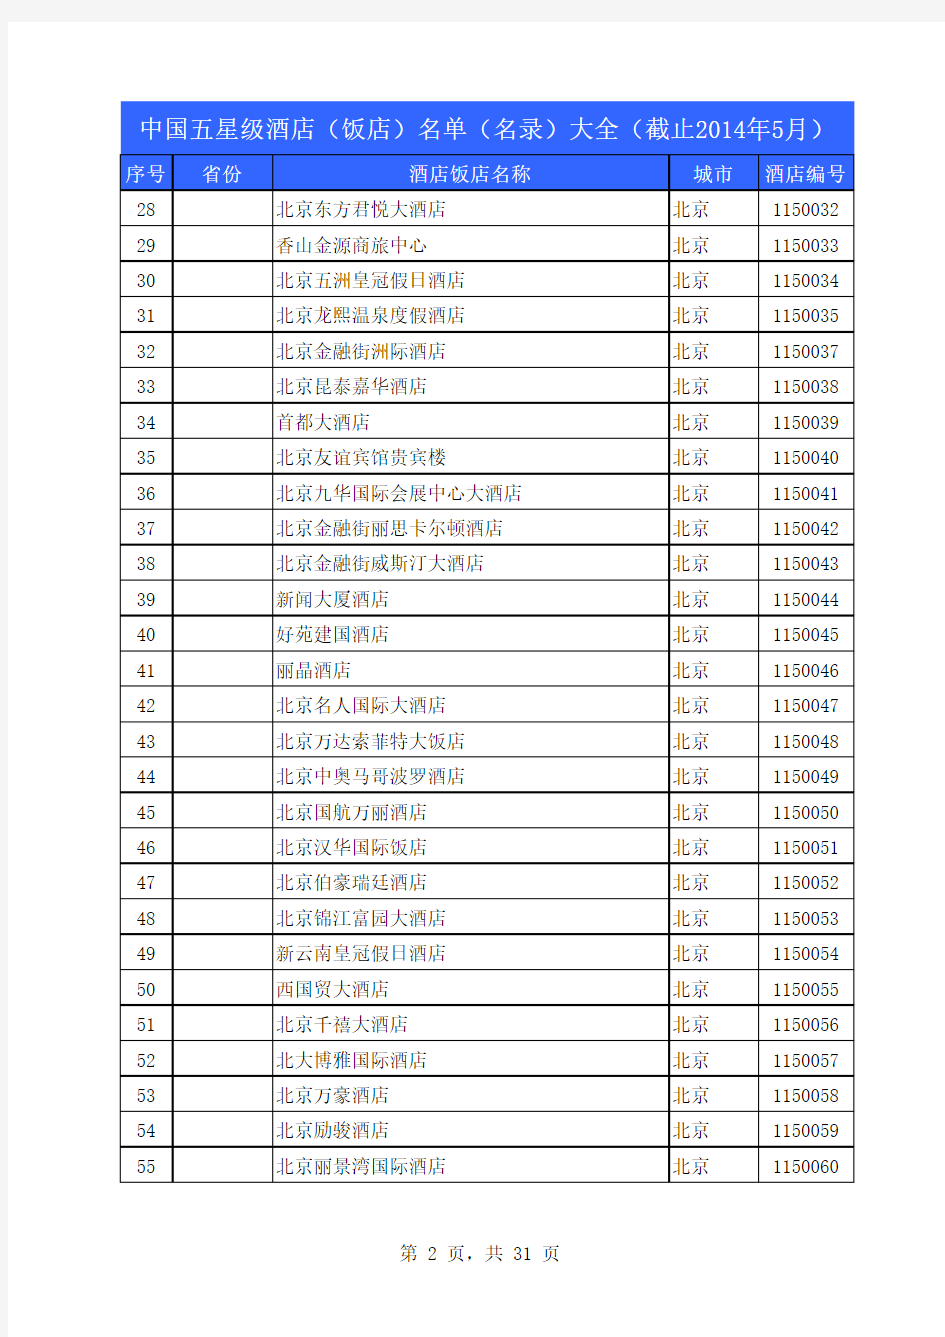 中国五星级酒店(饭店)名单(名录)大全(截止2014年5月)